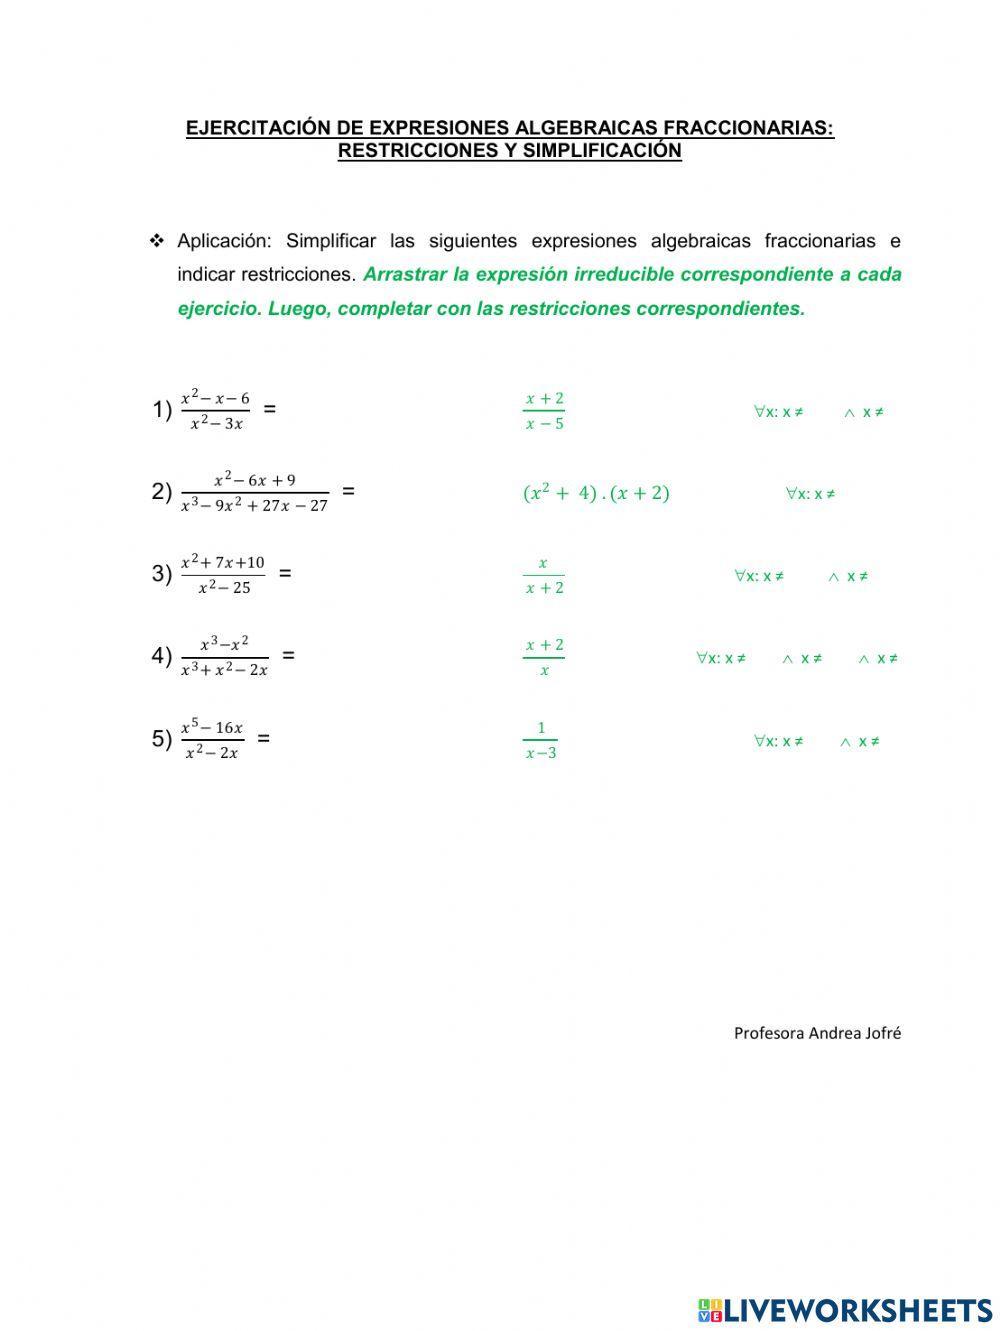 Expresiones Algebraicas Fraccionarias: Restricciones y simplificación